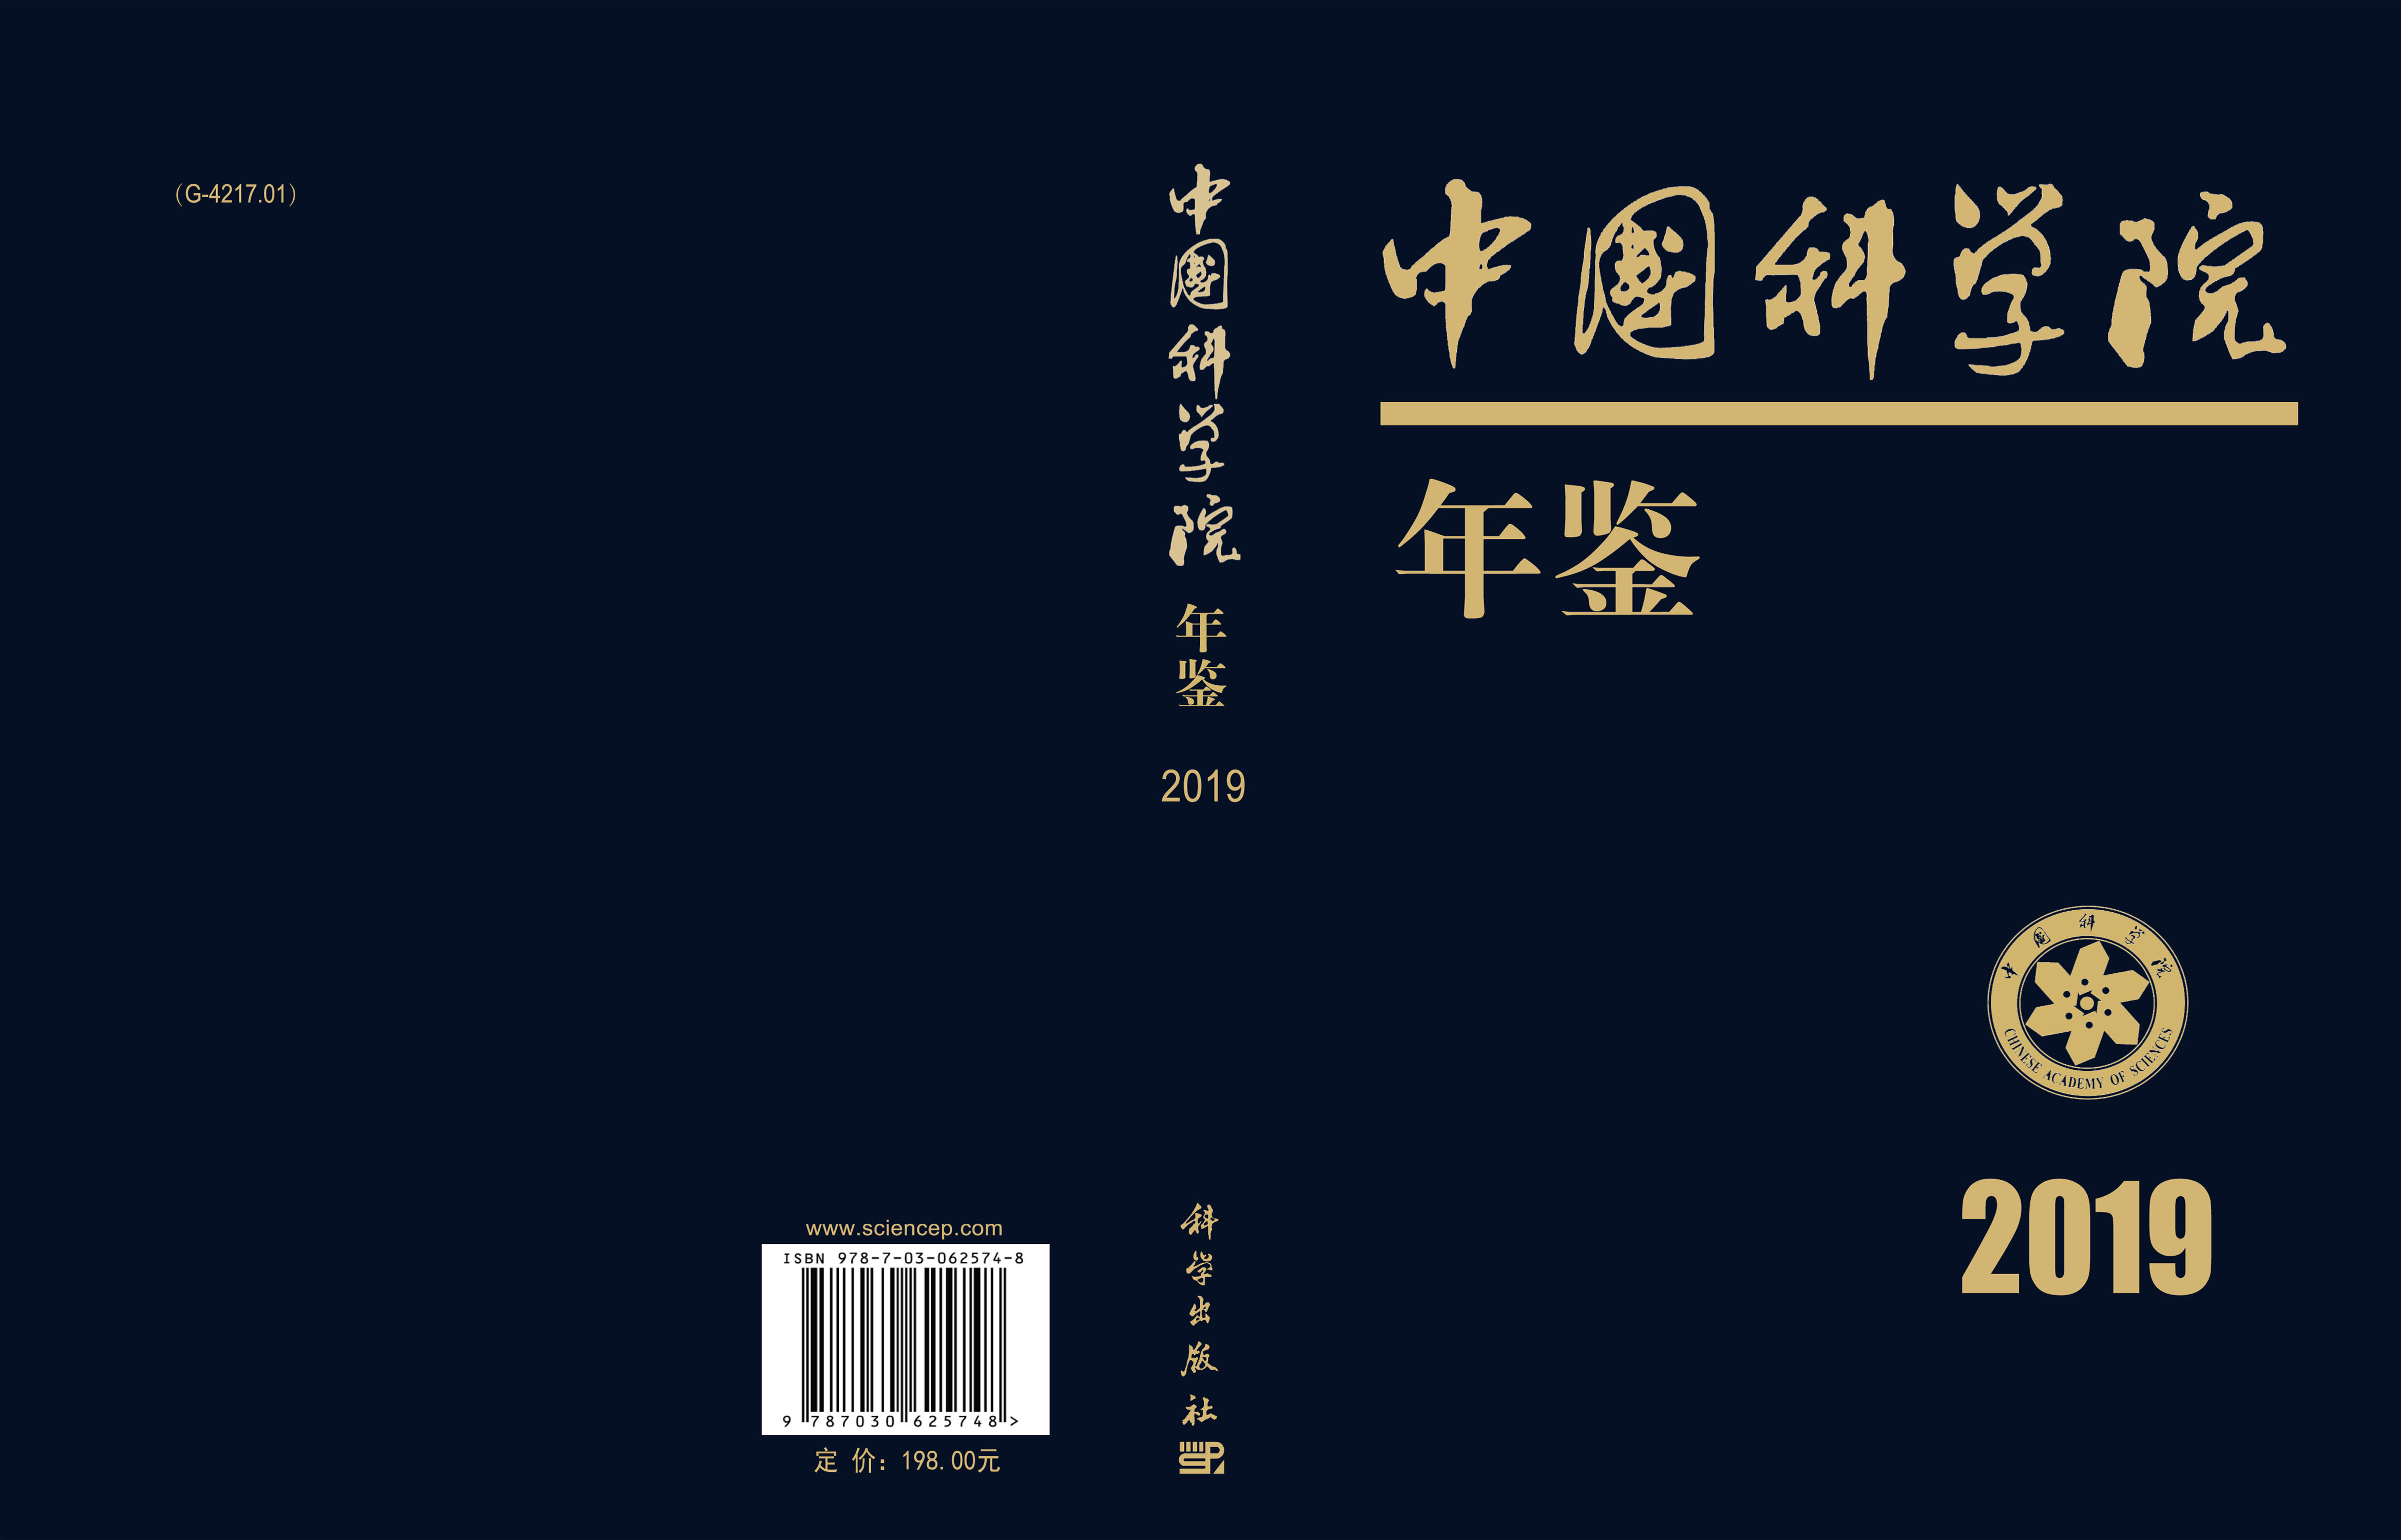 中国科学院年鉴（2019）